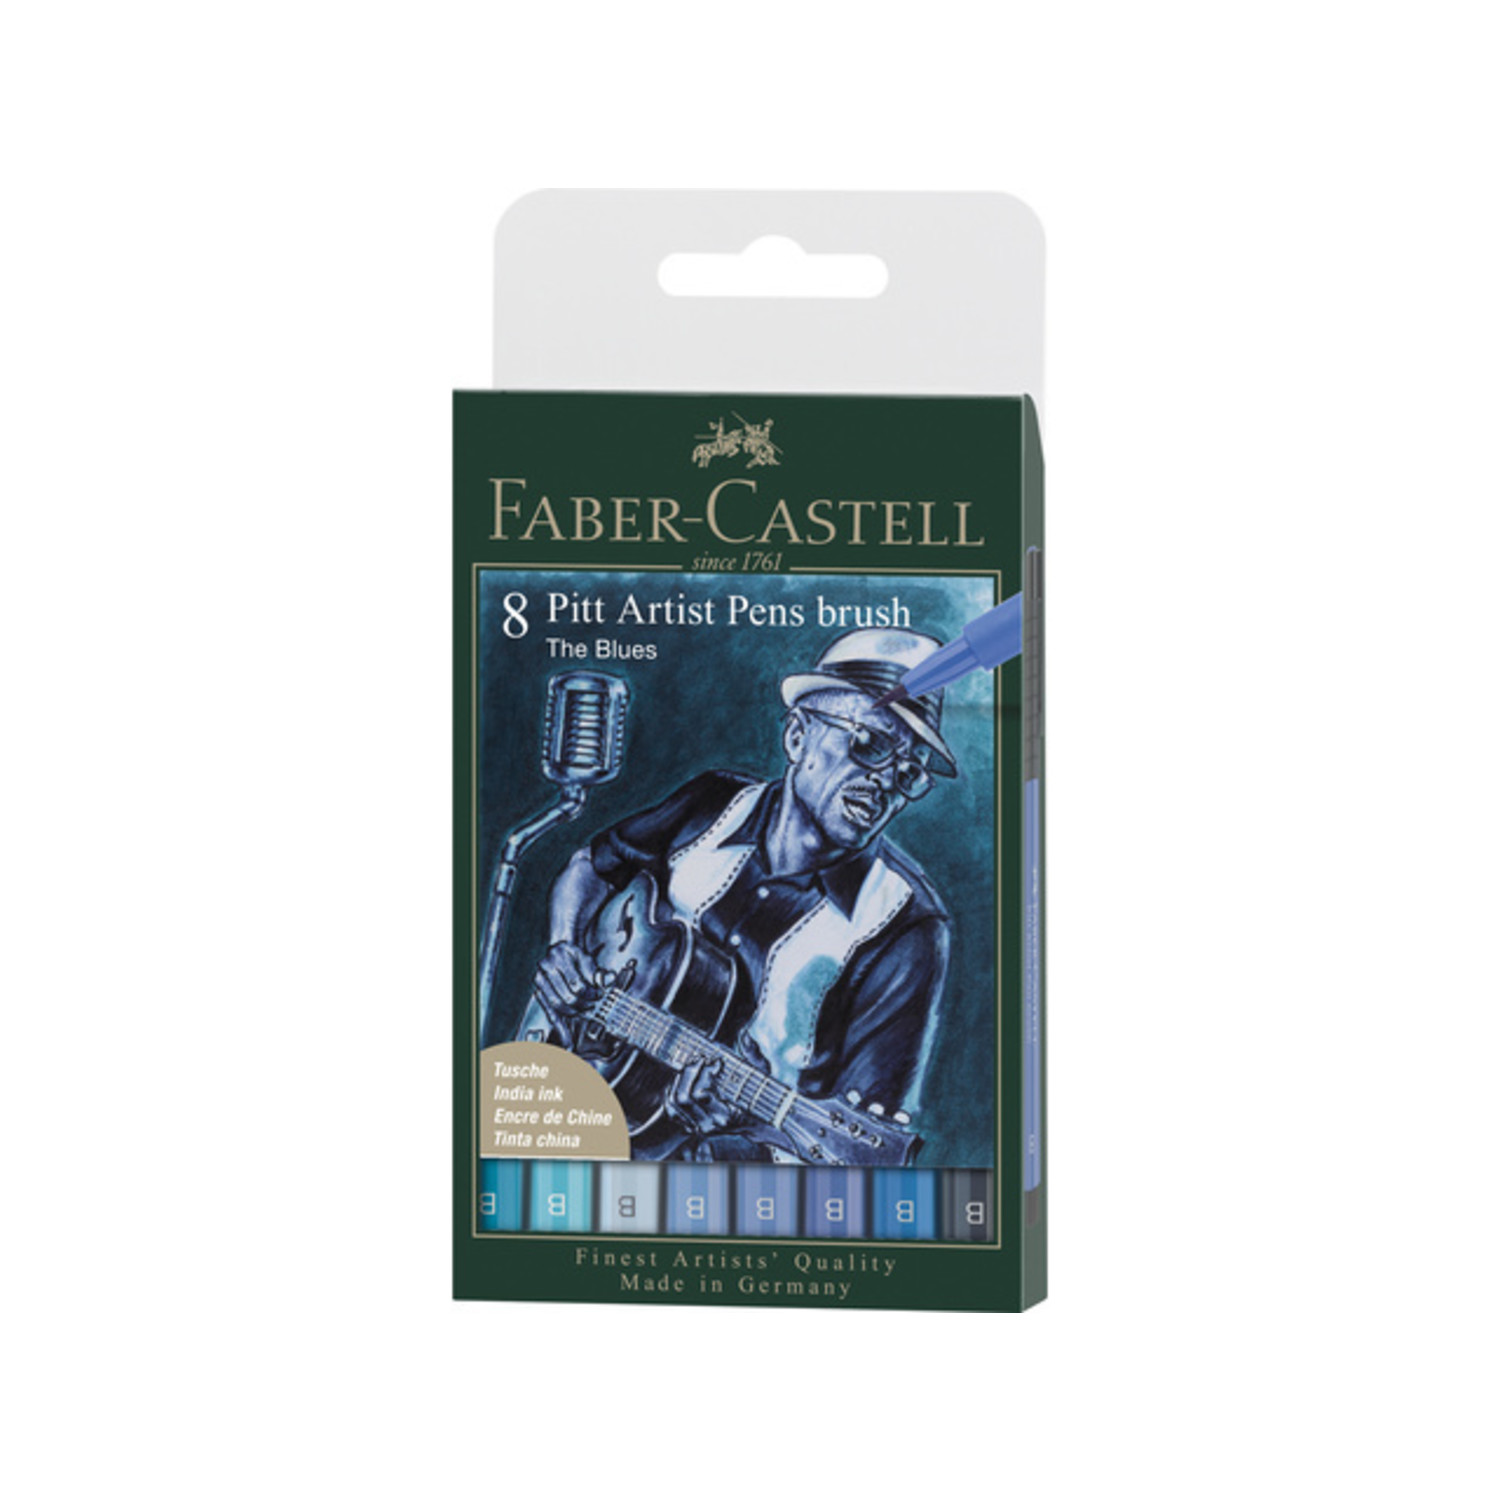 Faber-Castell Pitt Artist Pens and Sets